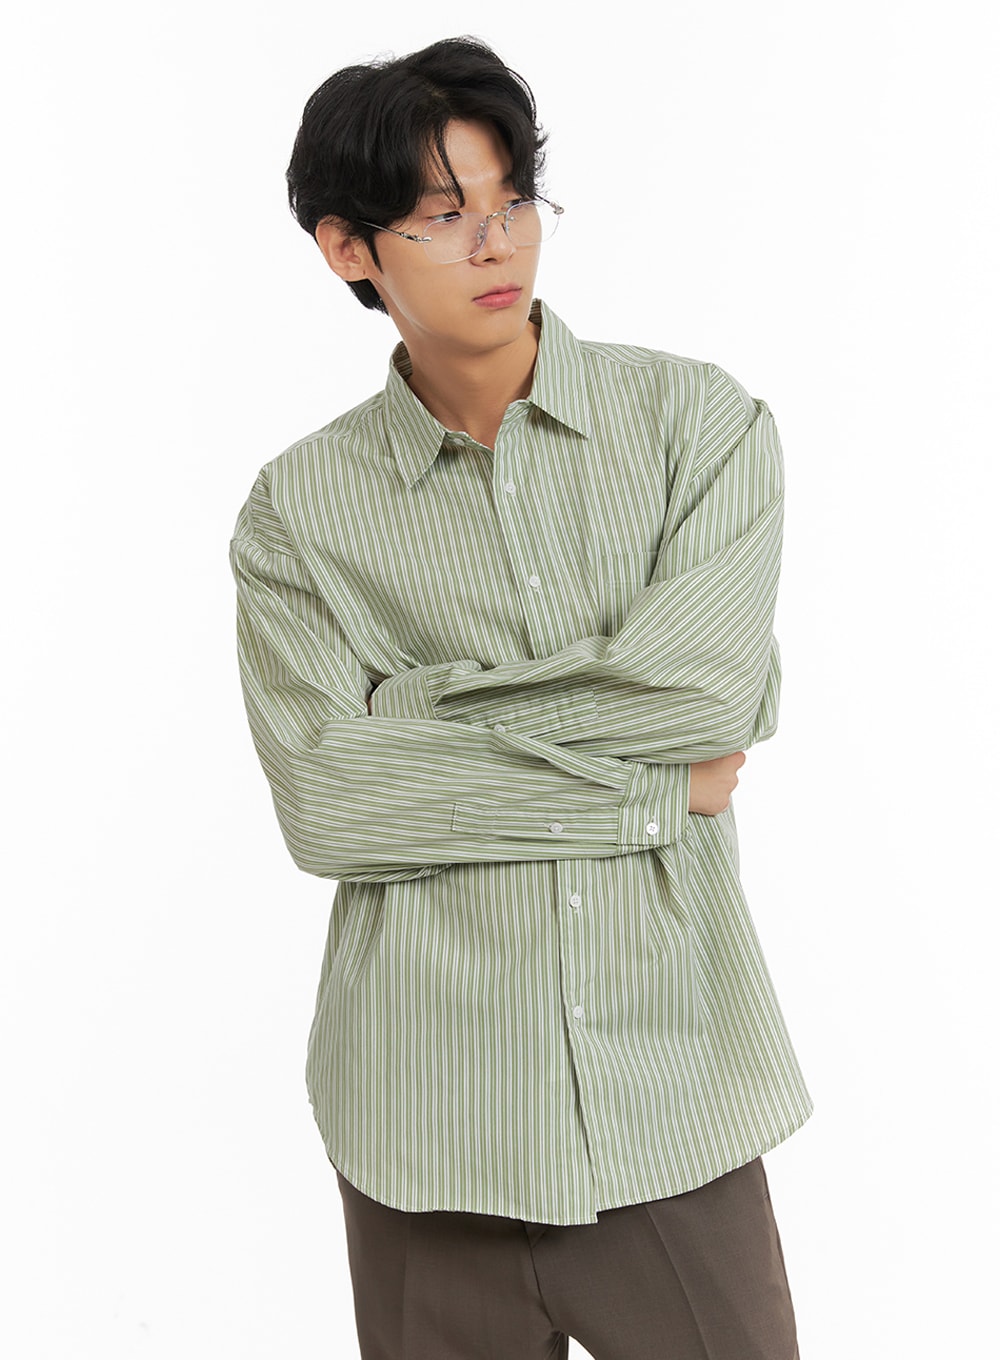 mens-striped-button-down-shirt-ia401